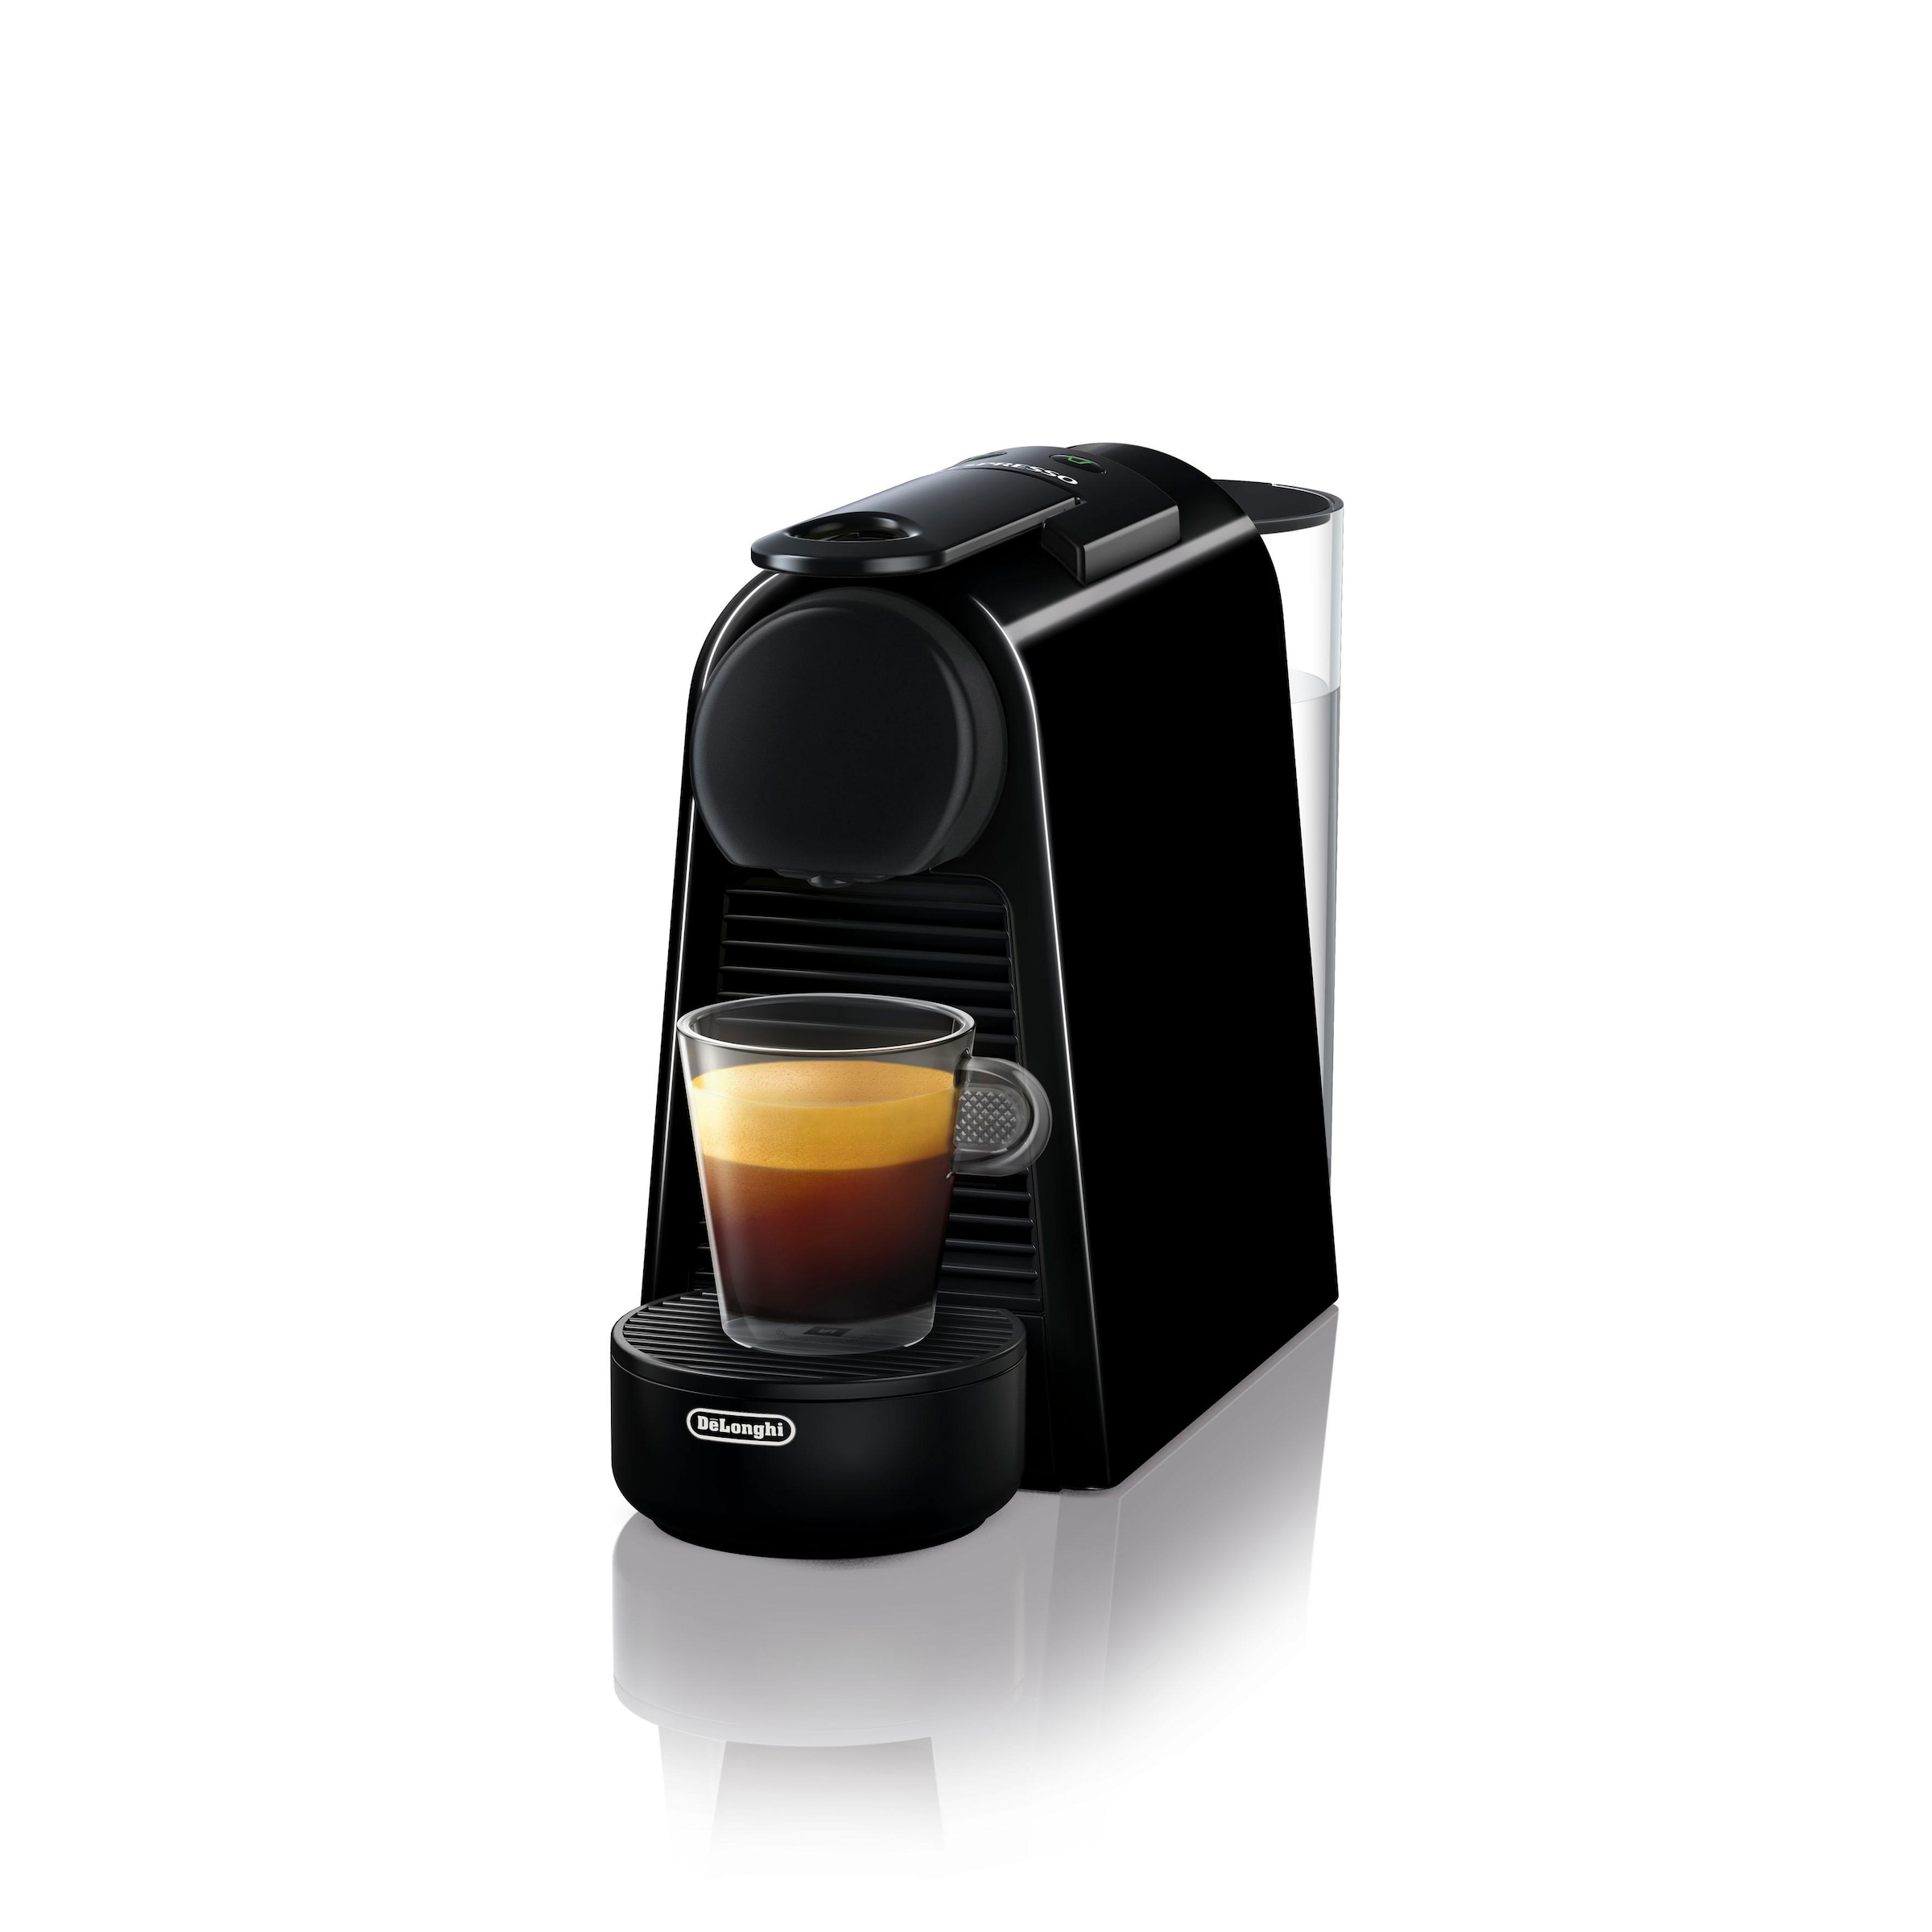 Nespresso Kapselmaschine »Essenza Mini EN85.B von DeLonghi, Black«, inkl. Willkommenspaket mit 7 Kapseln